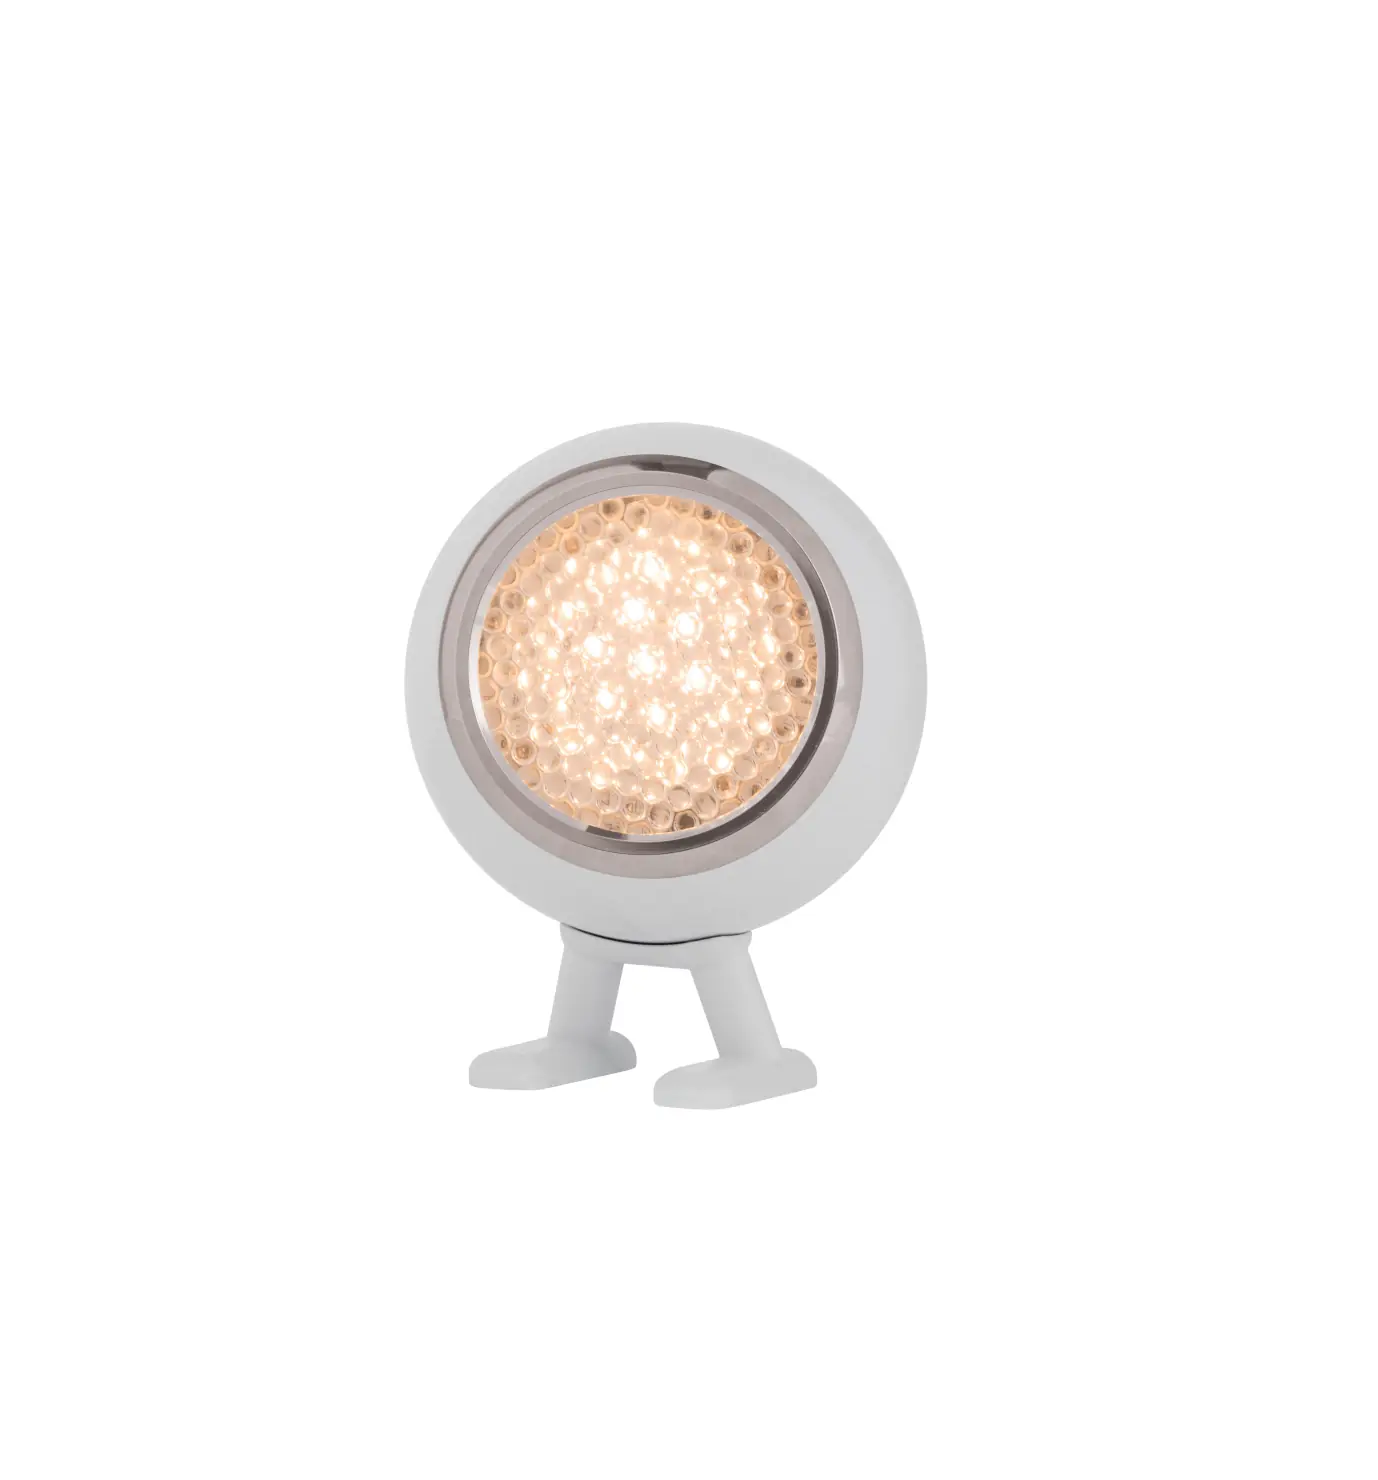 Norbitt Mr. Wattson LED Lampe Leuchte Cotton White NB-CW 5708311307959 470CW7959-1 (22)